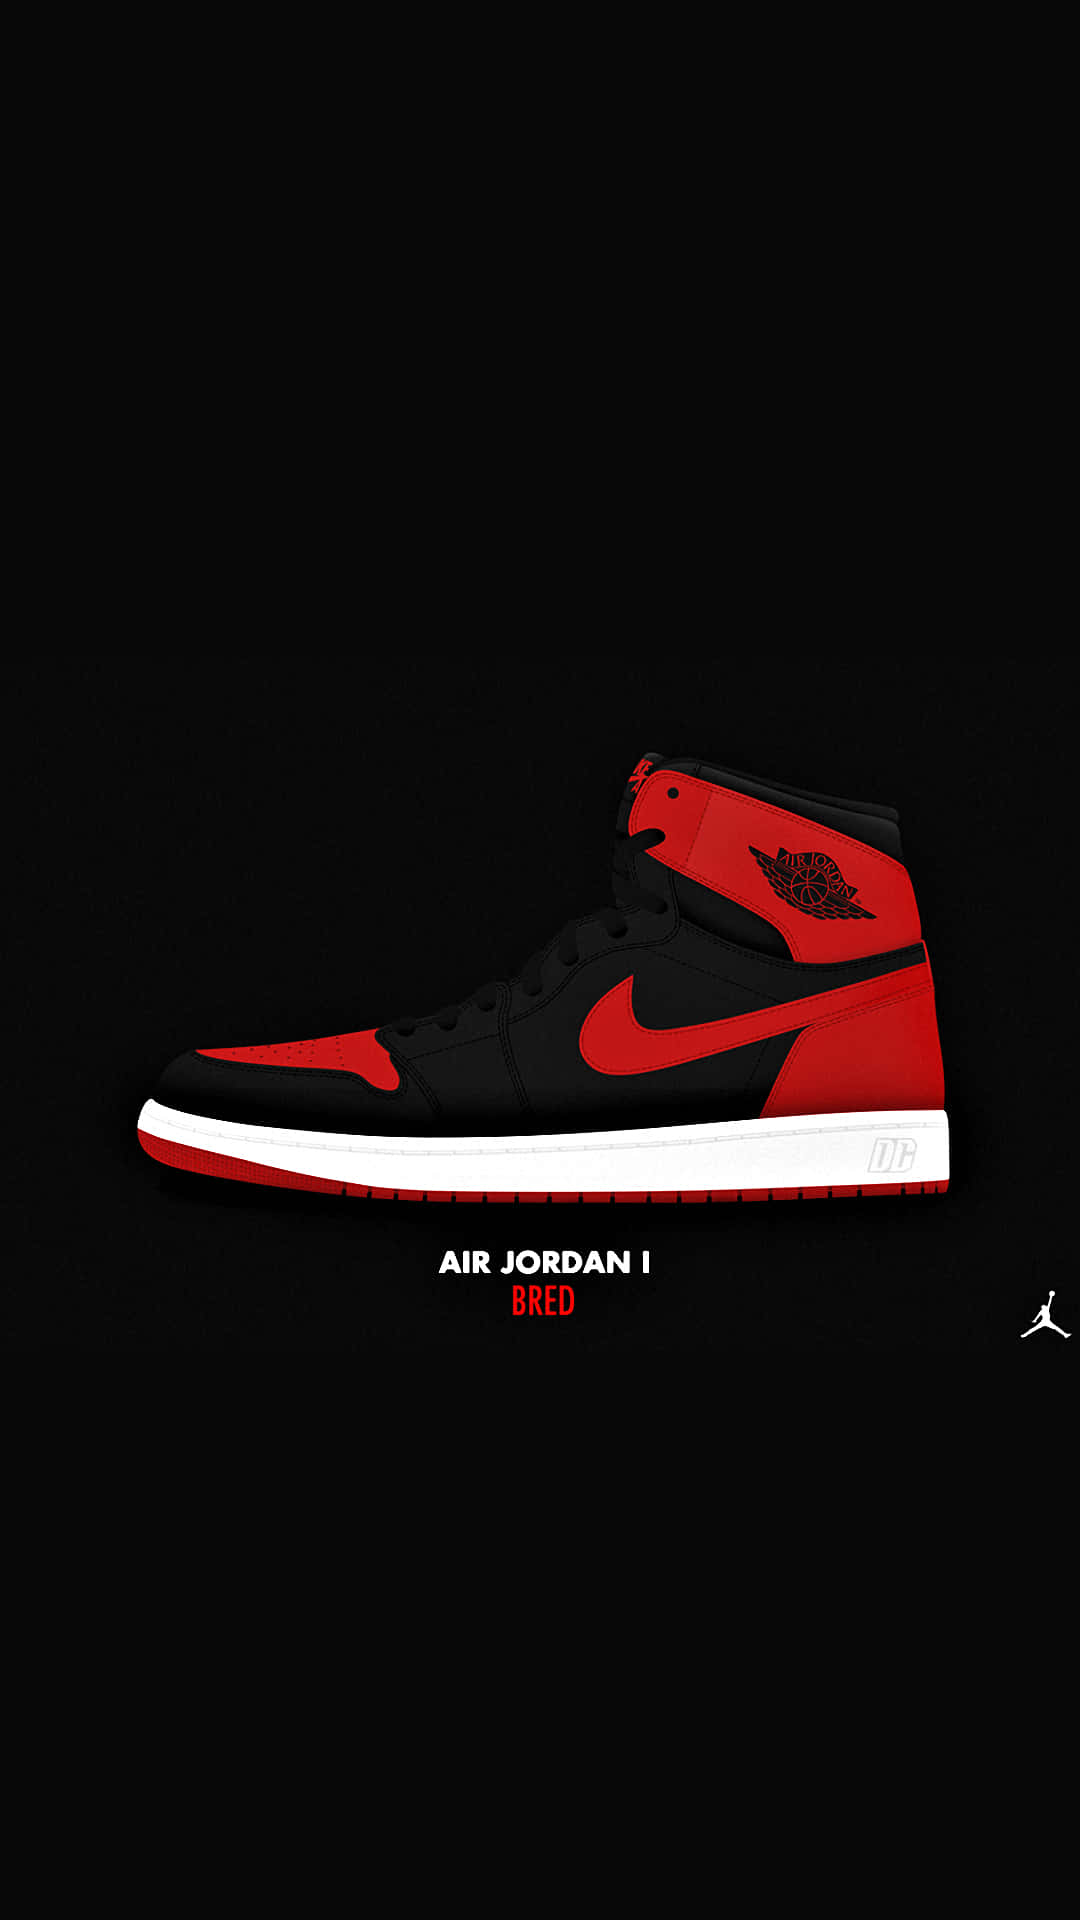 Visadin Stil Med Dessa Uttalande Röda Jordan-skor. Wallpaper